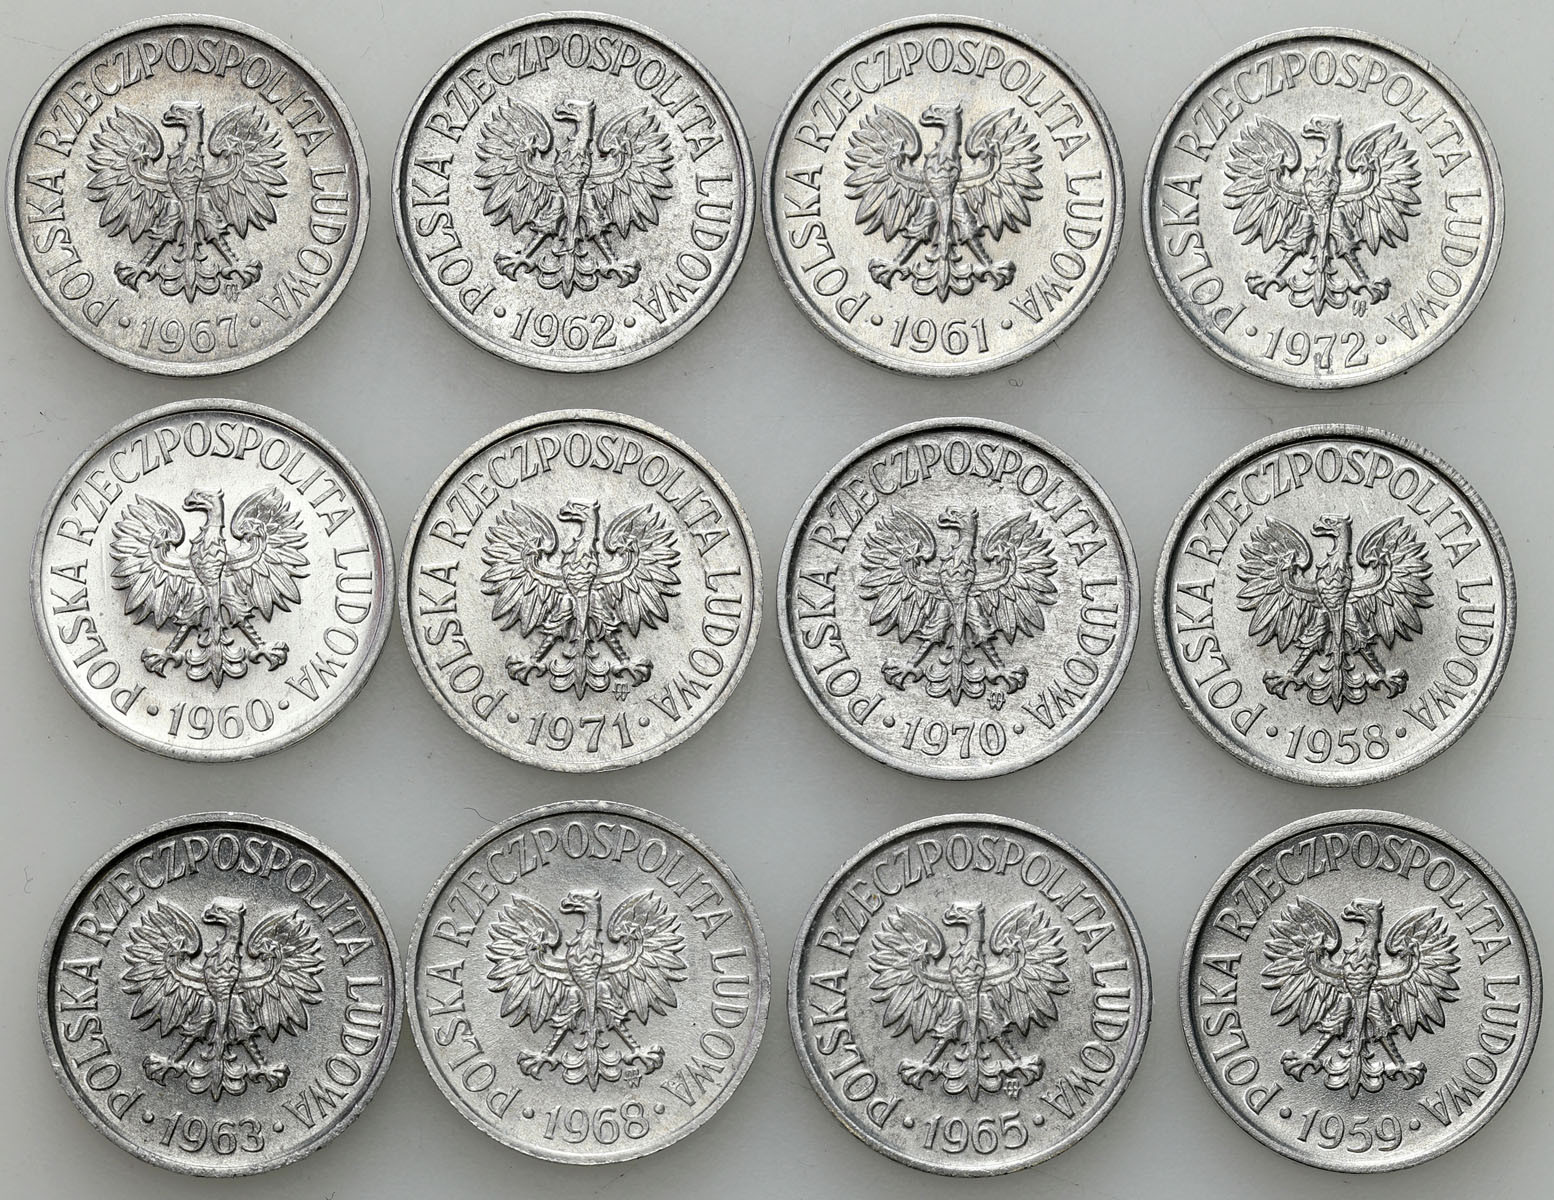 PRL. 5 groszy 1958-1972, zestaw 12 sztuk